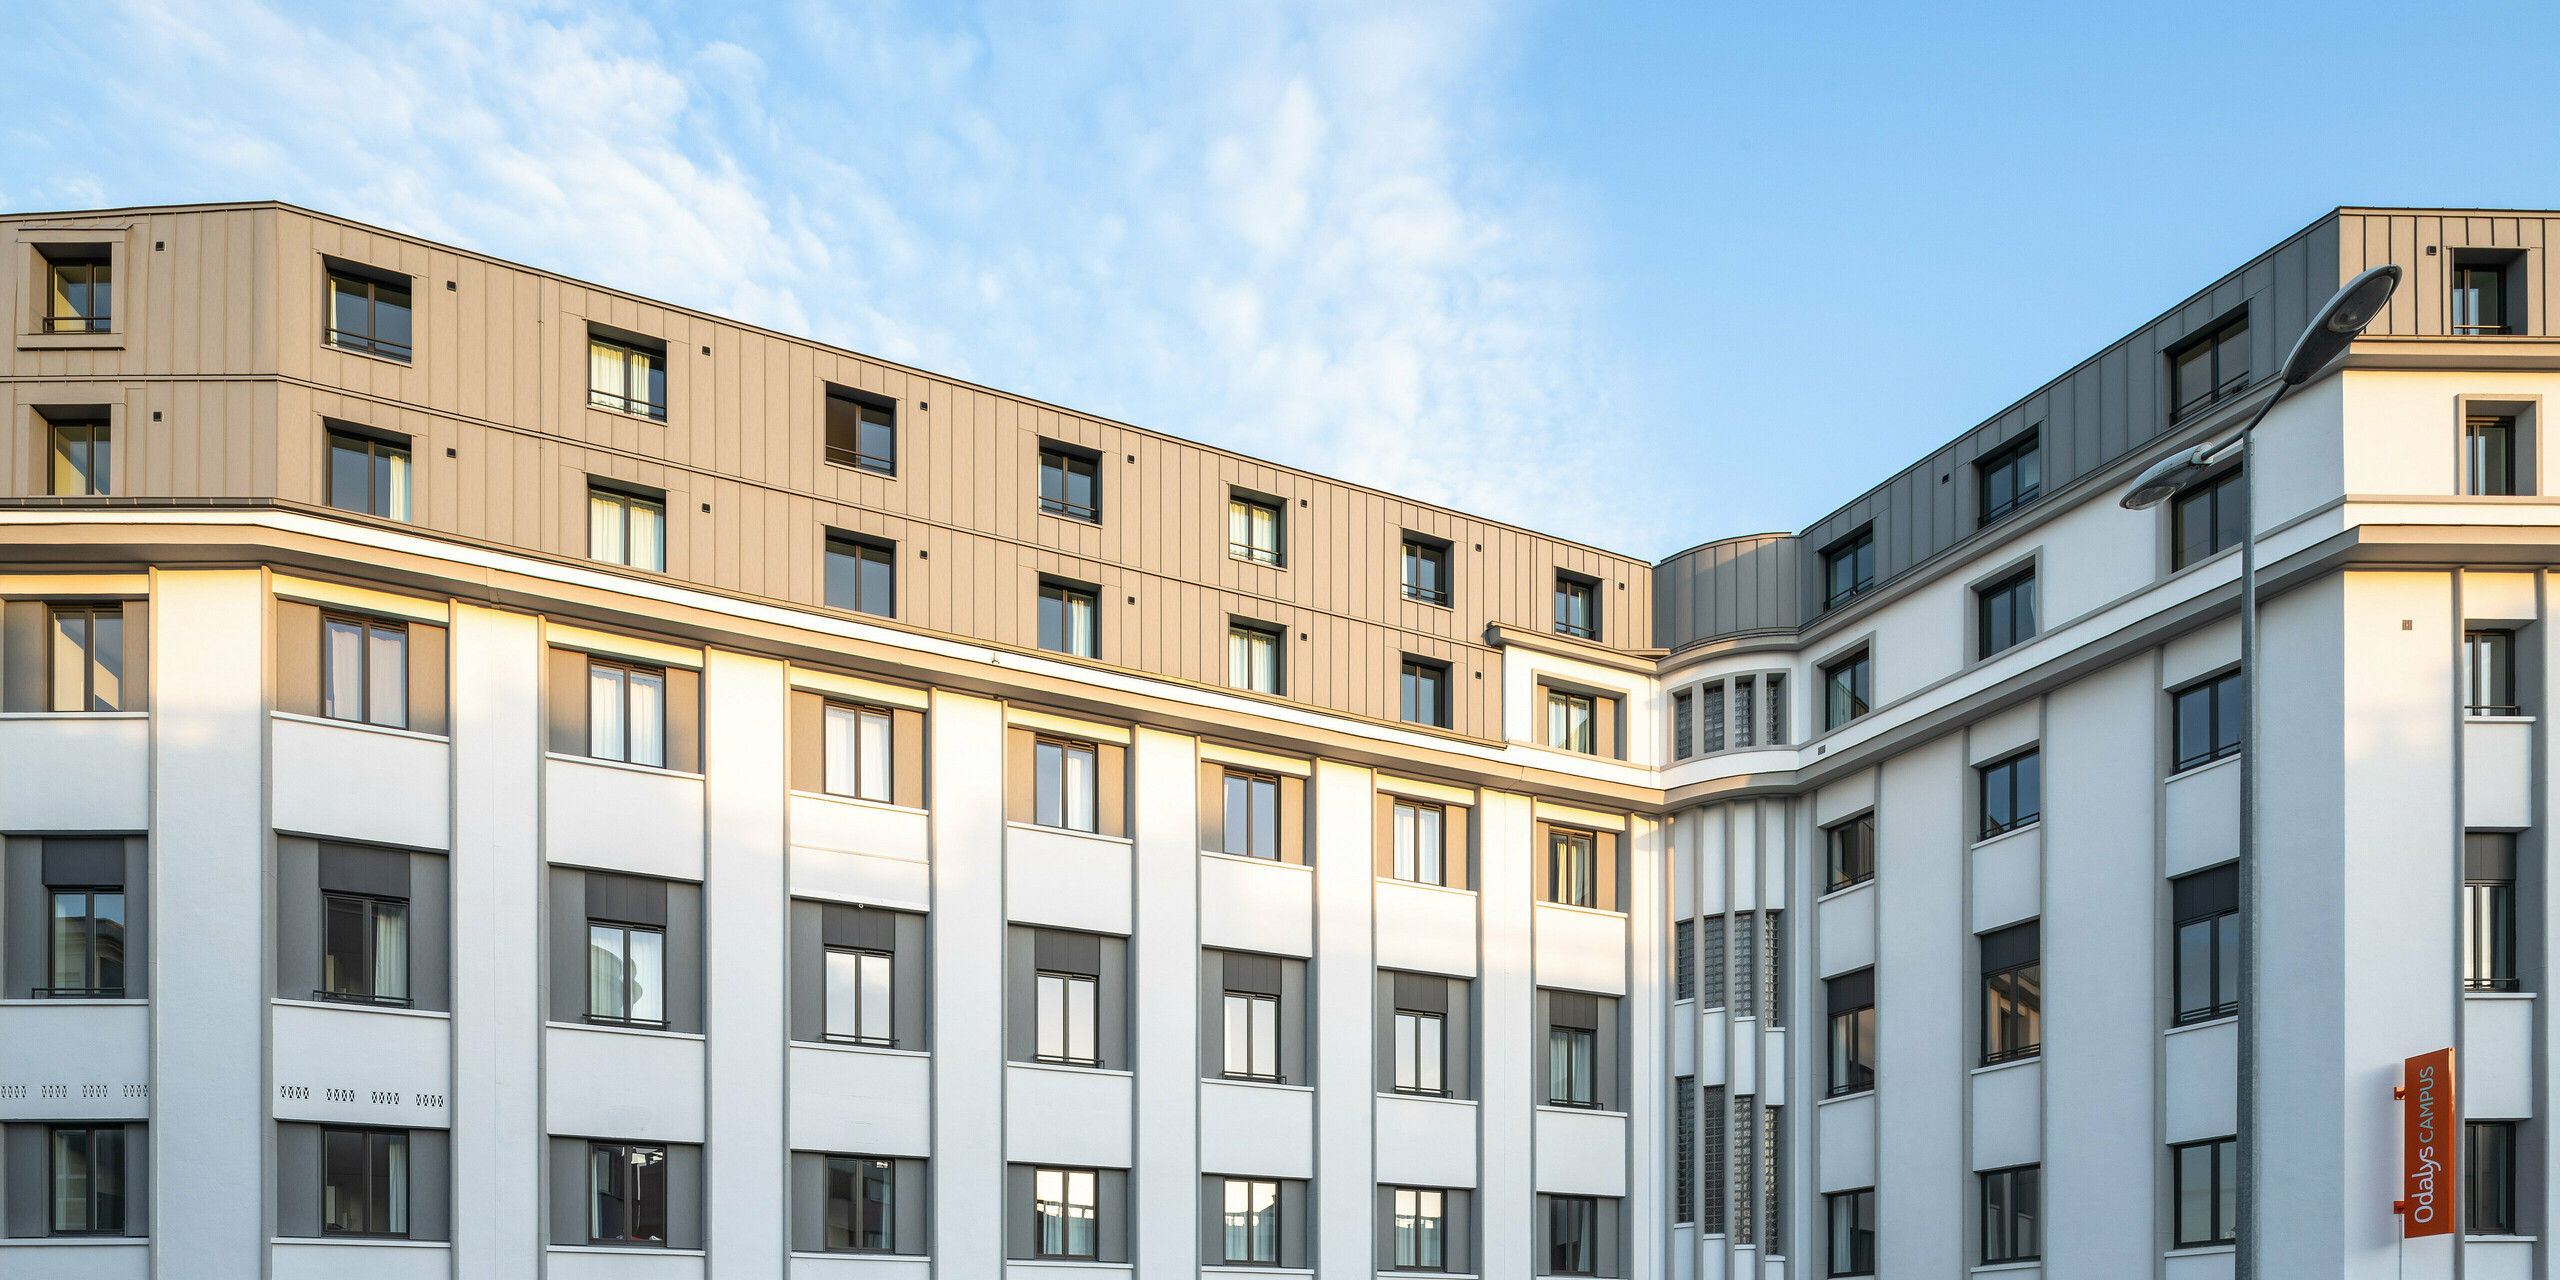 La forme particulière du bâtiment d'une résidence étudiante au Mans est recouverte de PREFALZ en gris quartz au niveau des étages supérieurs.